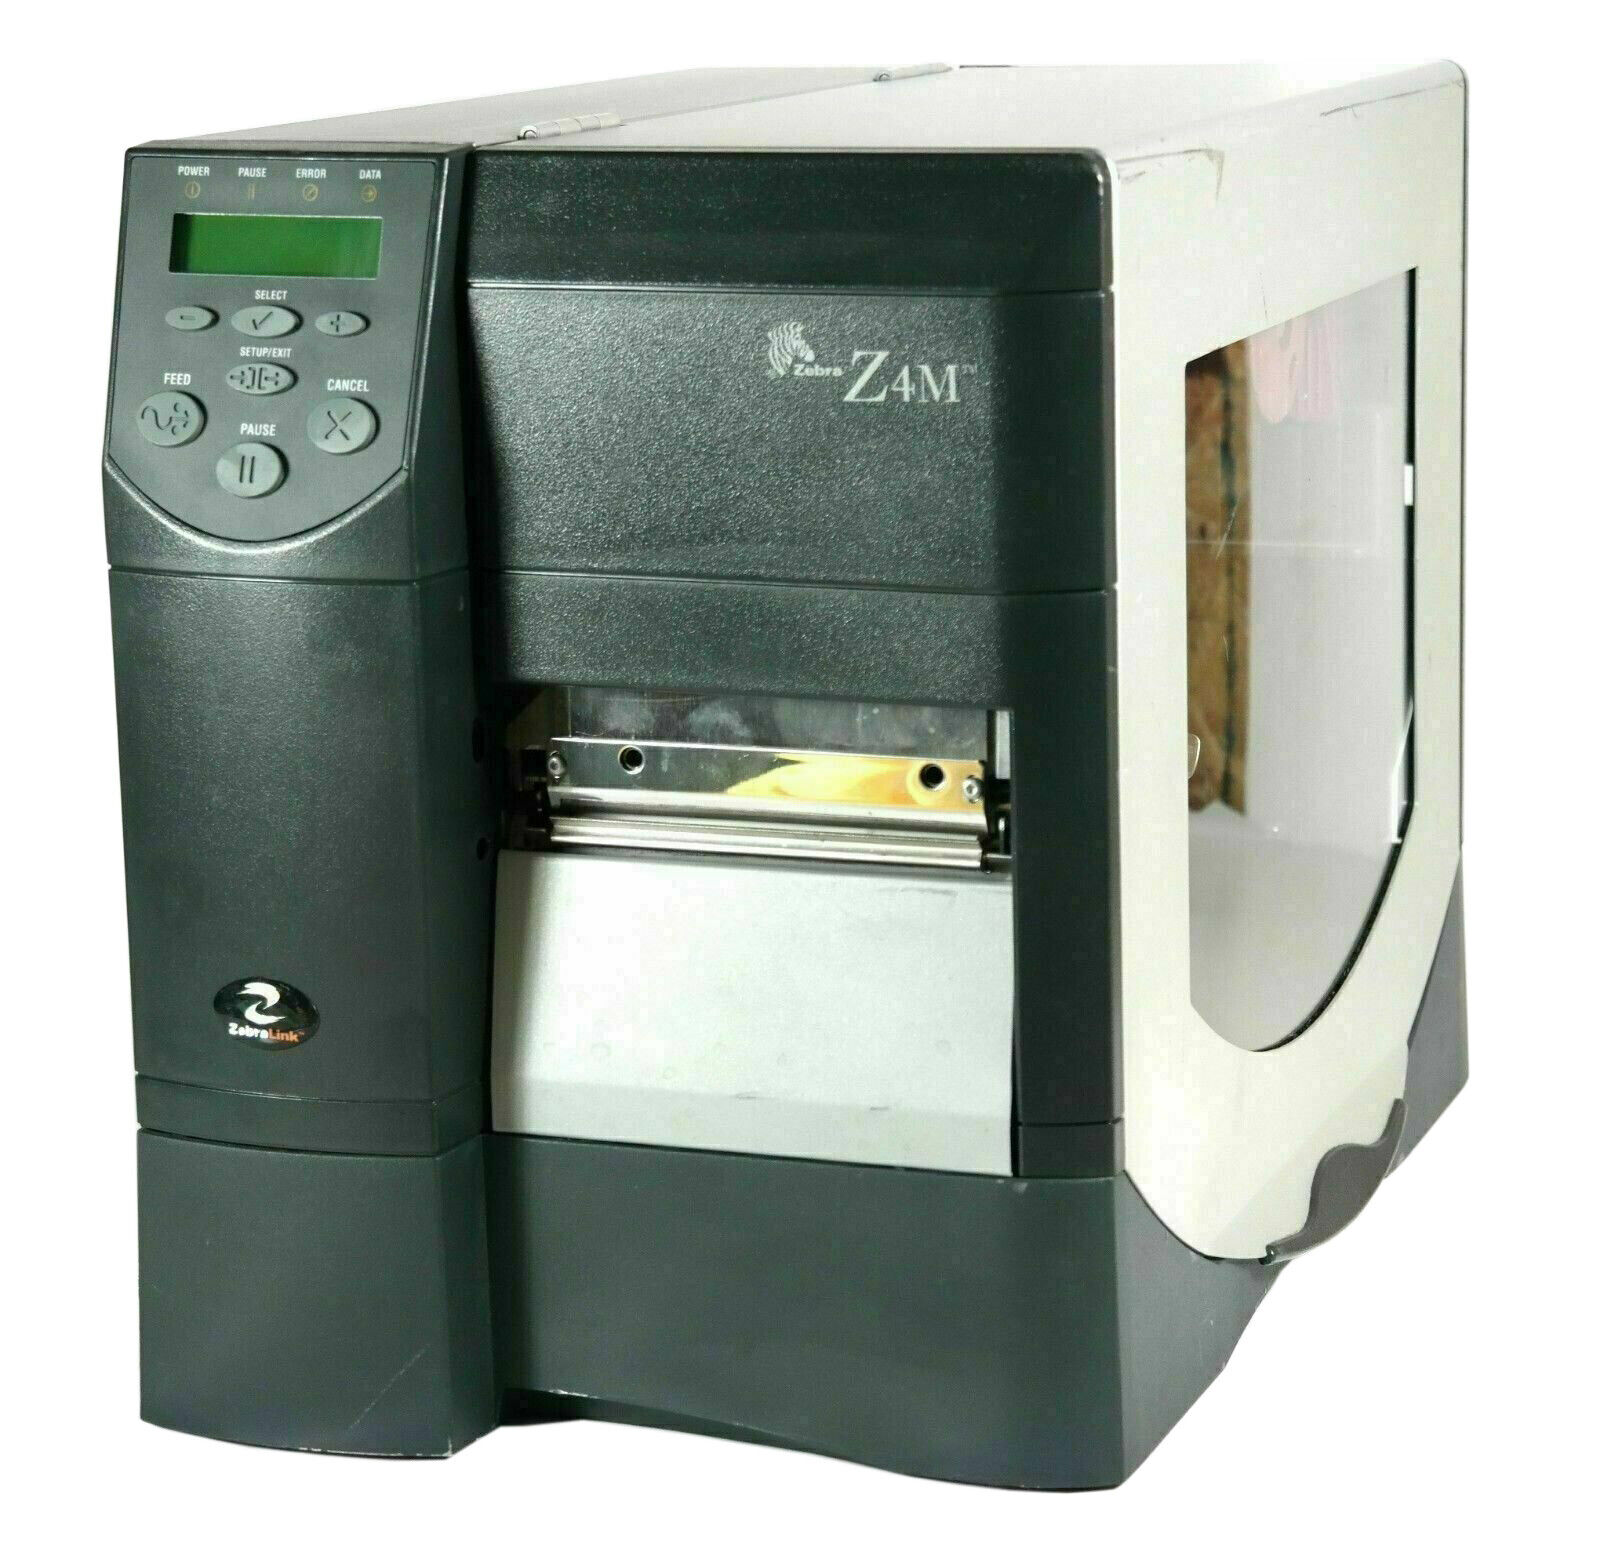 Zebra Z4M Plus Thermal Transfer Label Printer 300dpi Serial Parallel Zebra Frmwr